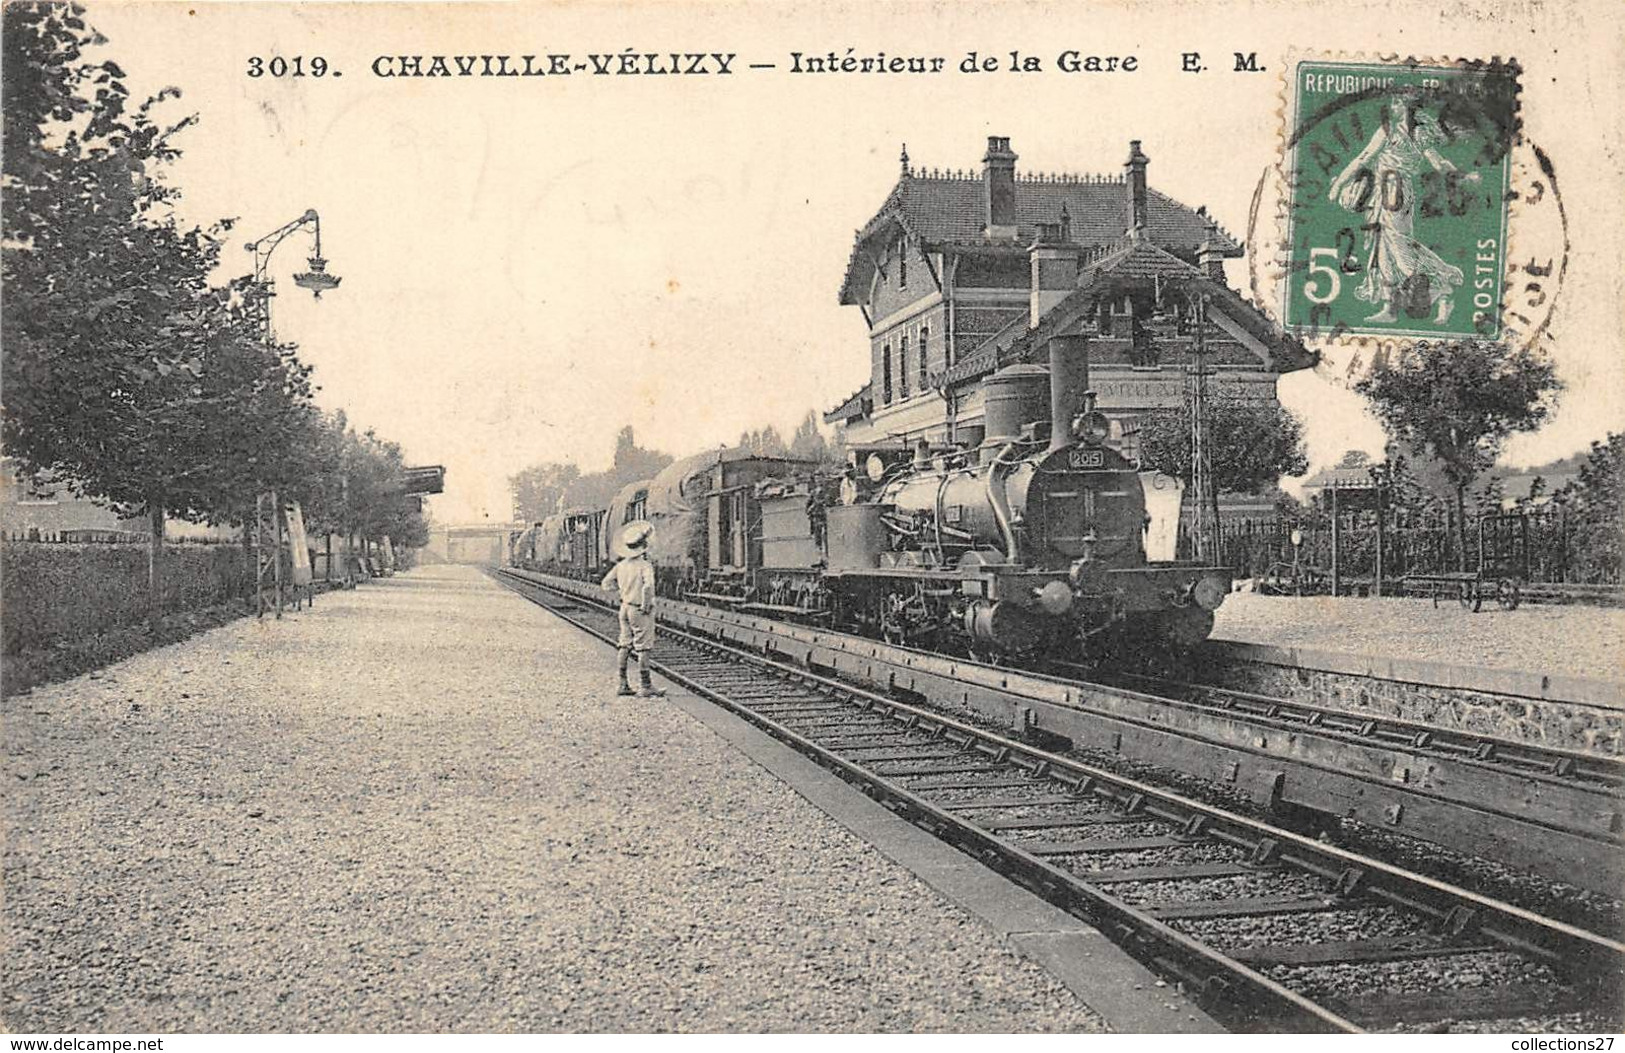 92-CHAVILLE-VELIZY- INTERIEUR DE LA GARE - Chaville